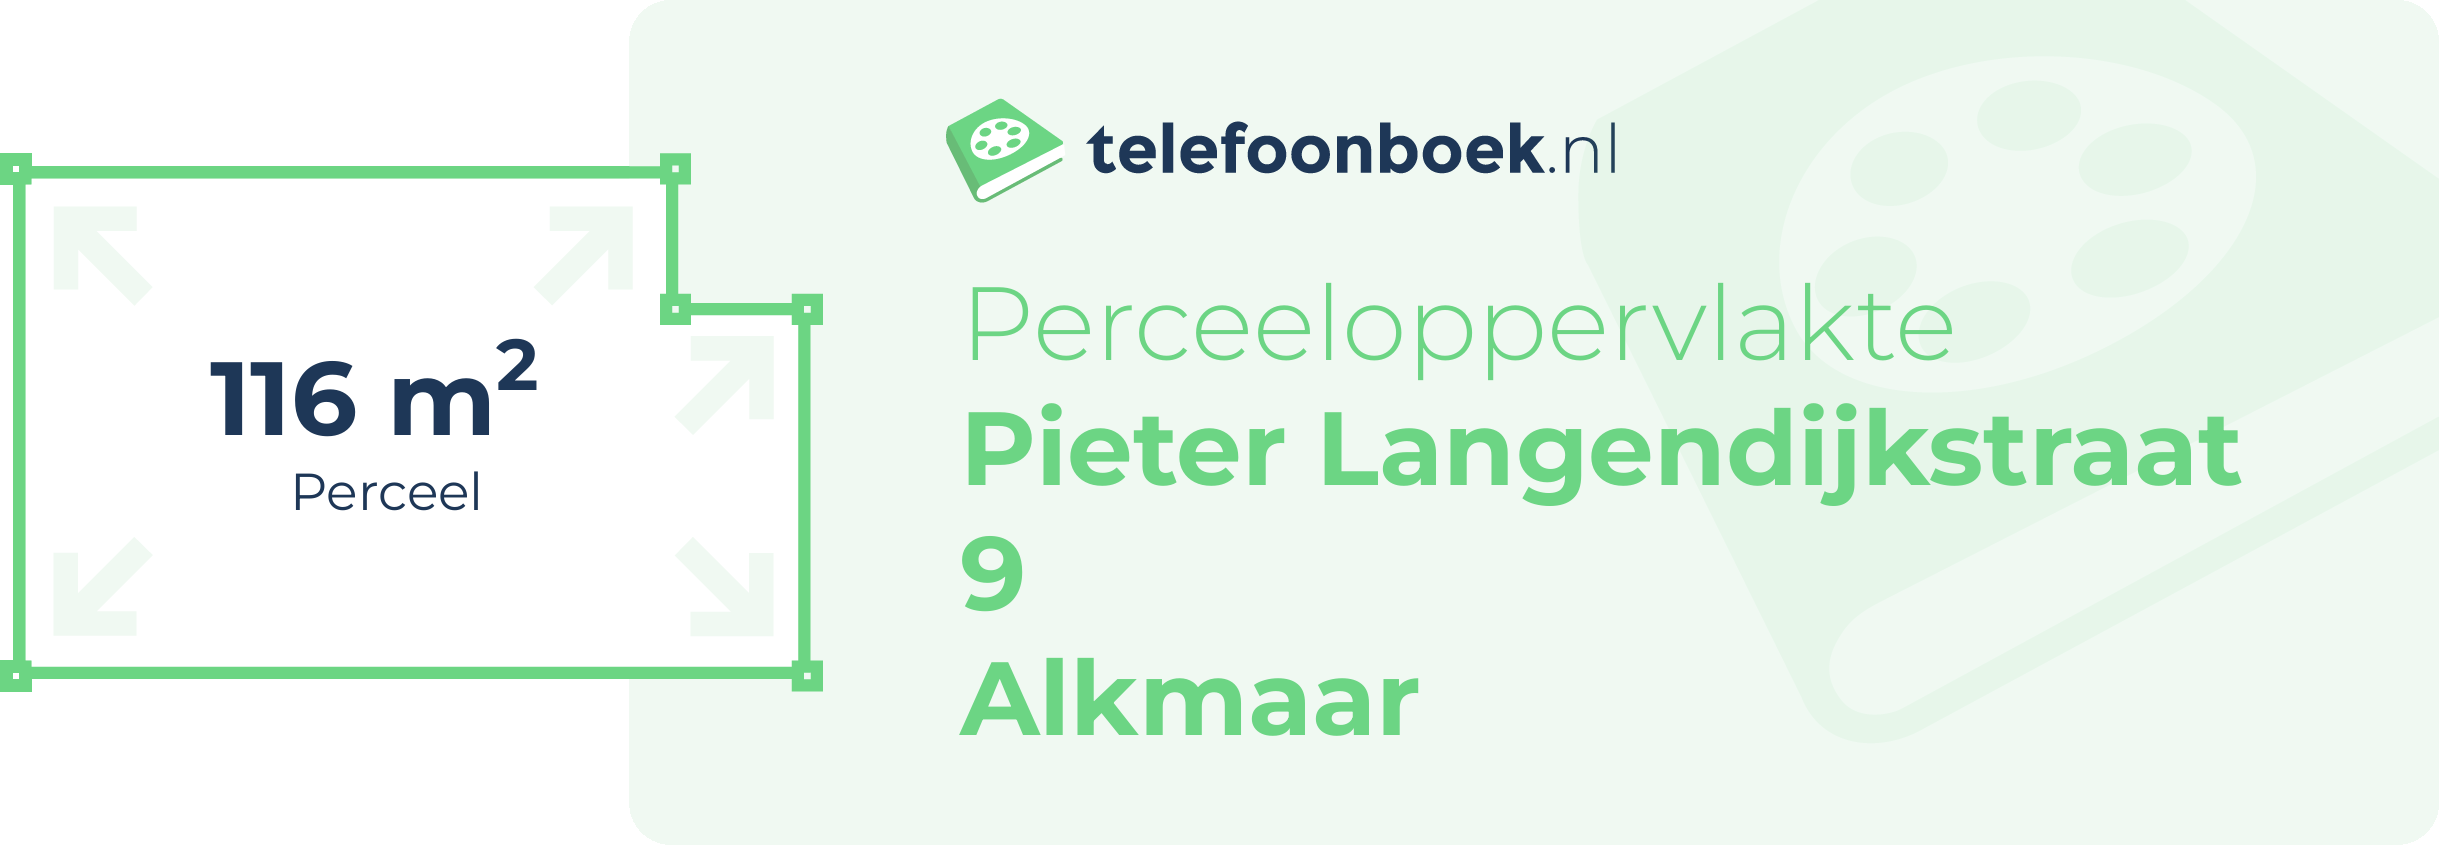 Perceeloppervlakte Pieter Langendijkstraat 9 Alkmaar